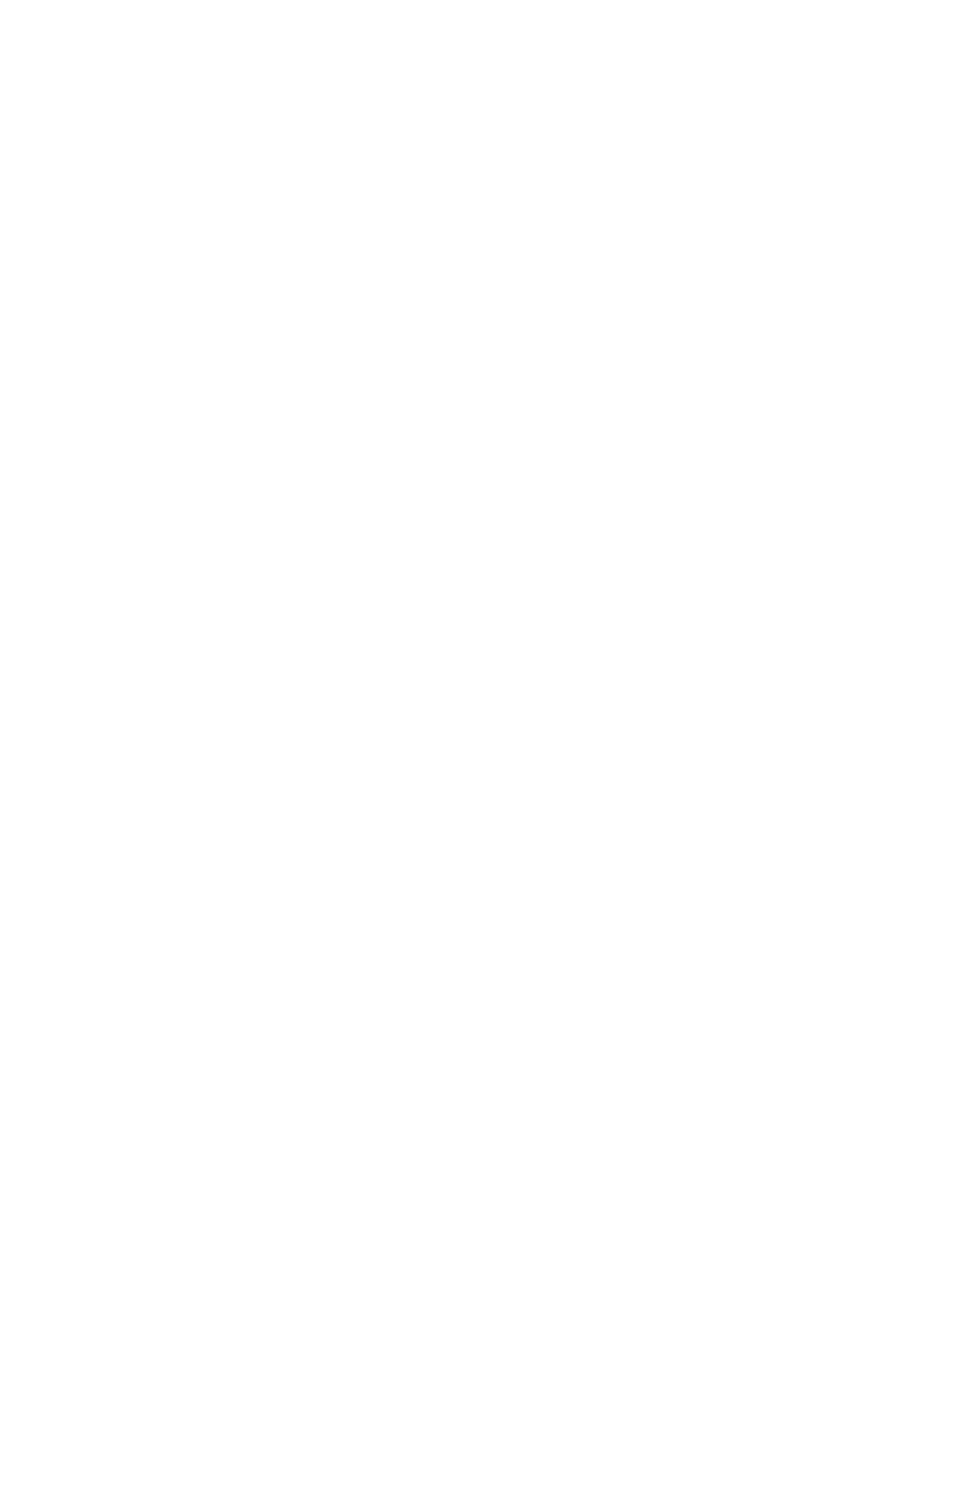 Rottneros logo for dark backgrounds (transparent PNG)